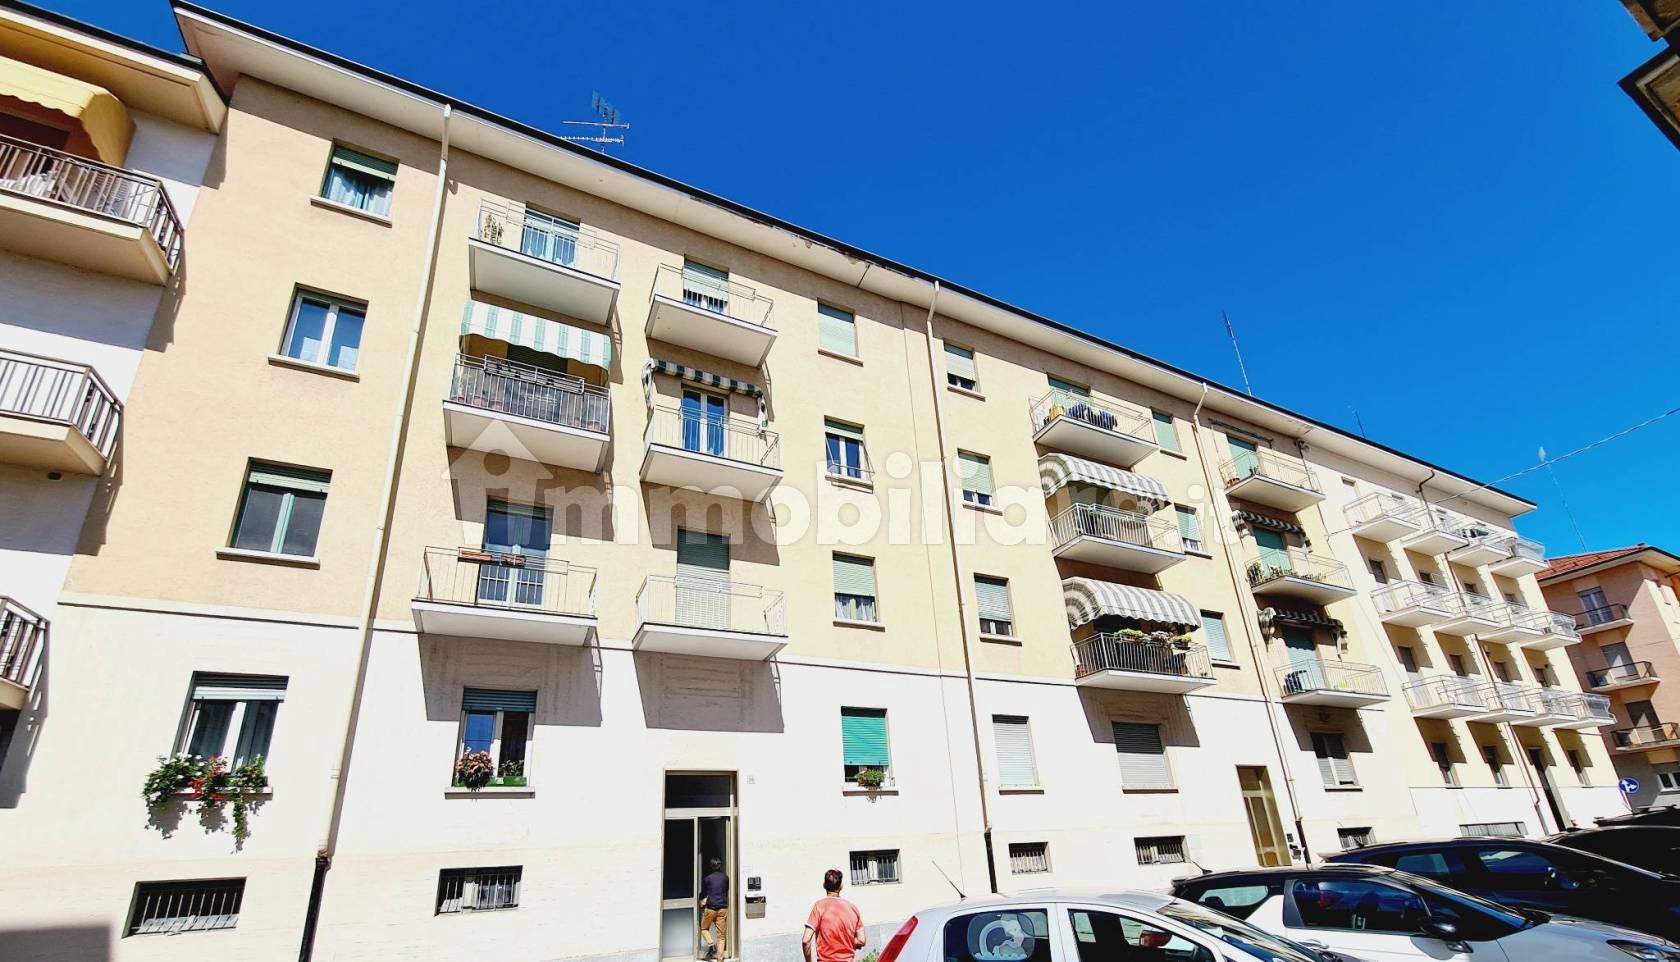 DAMA DI CASE: agenzia immobiliare di Cuneo - Immobiliare.it